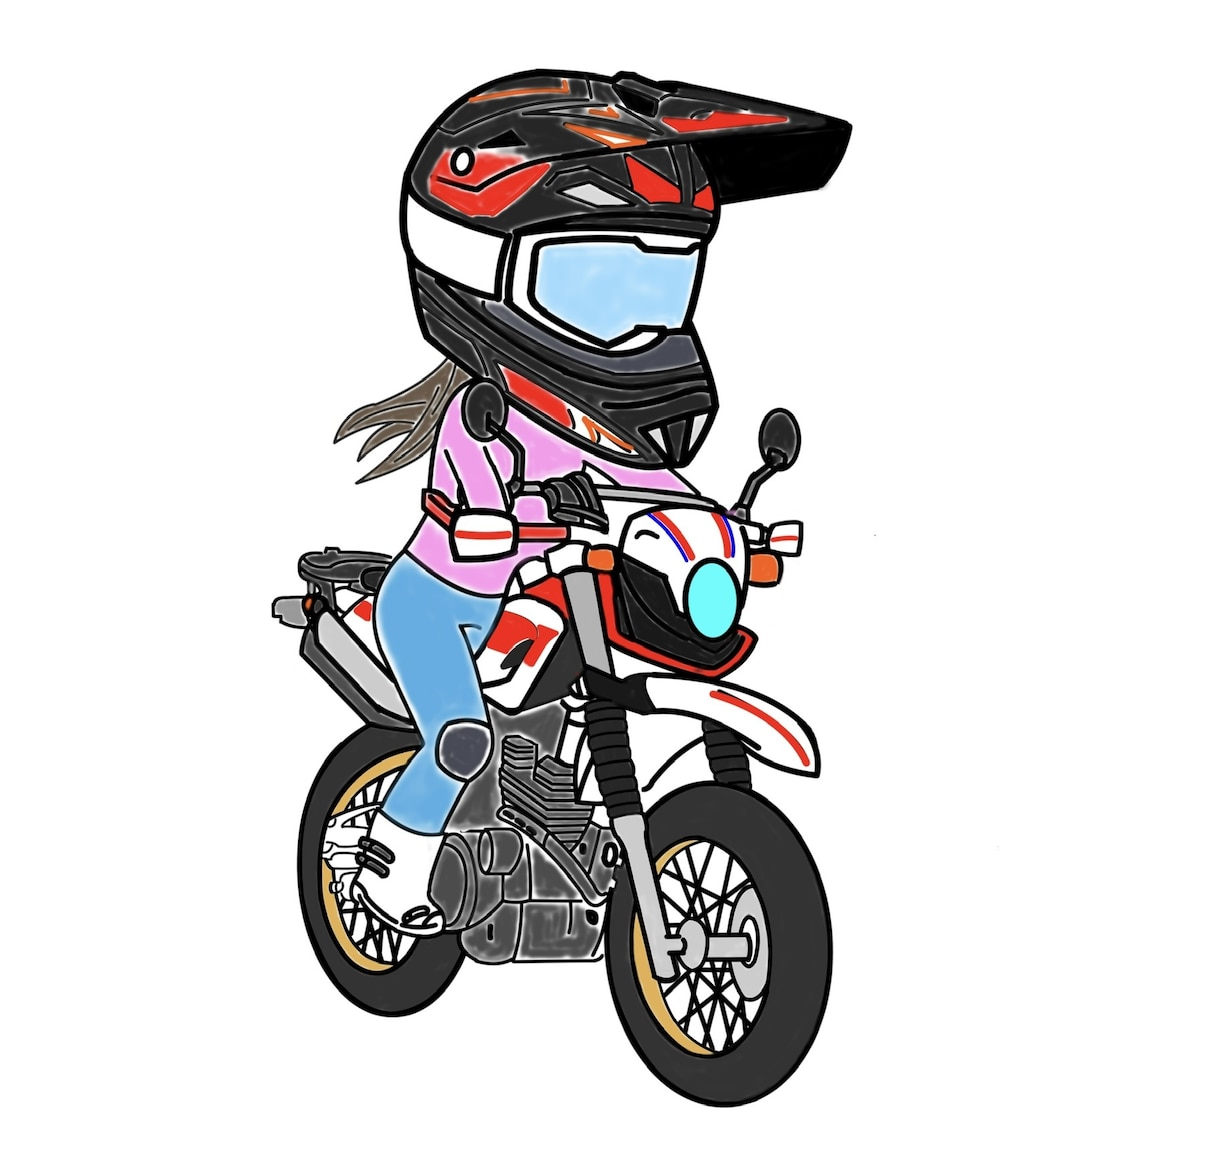 バイク女子のバイク選びアドバイスします 自分のライフスタイルに合ったバイク選び イメージ1